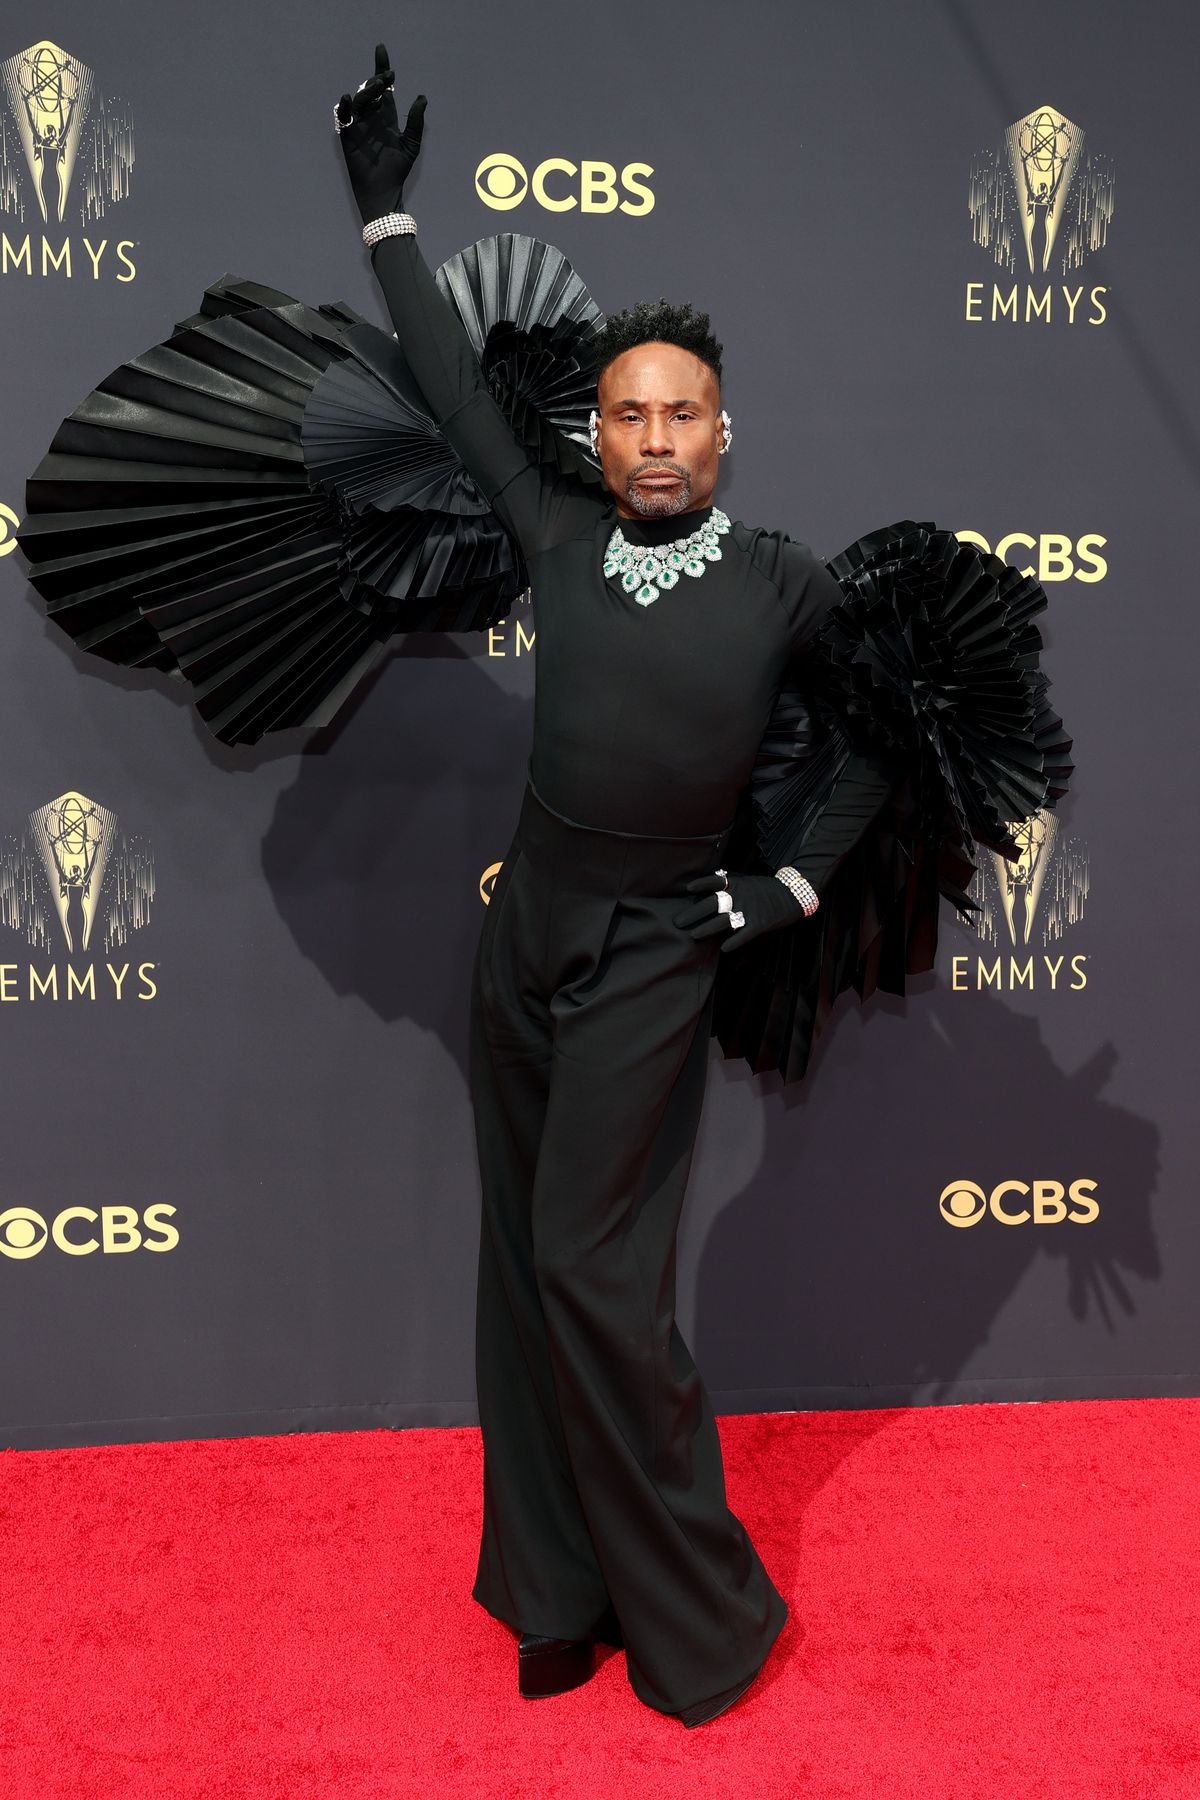 Τα φτερά του Billy Porter Just Shut Down The Emmys Red Carpet